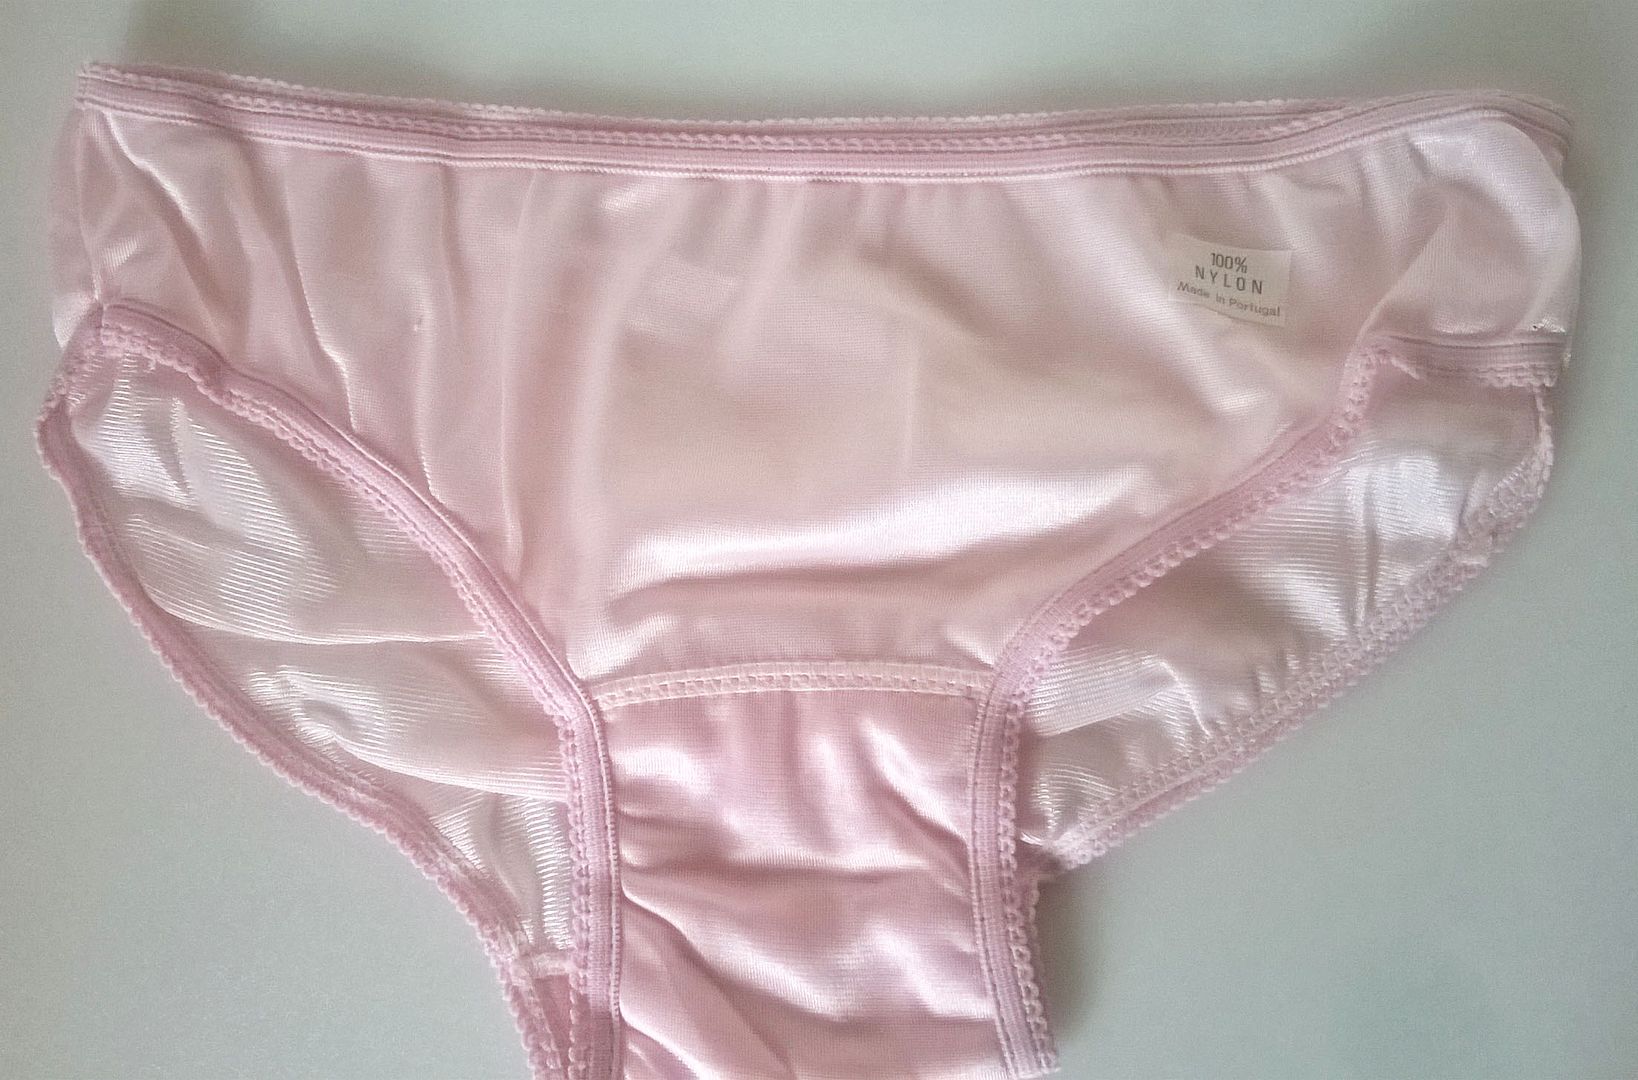 Ladies Or Teen Girls Silky Pink Nylon 1960s Panties Knickers S 8 10 Ebay